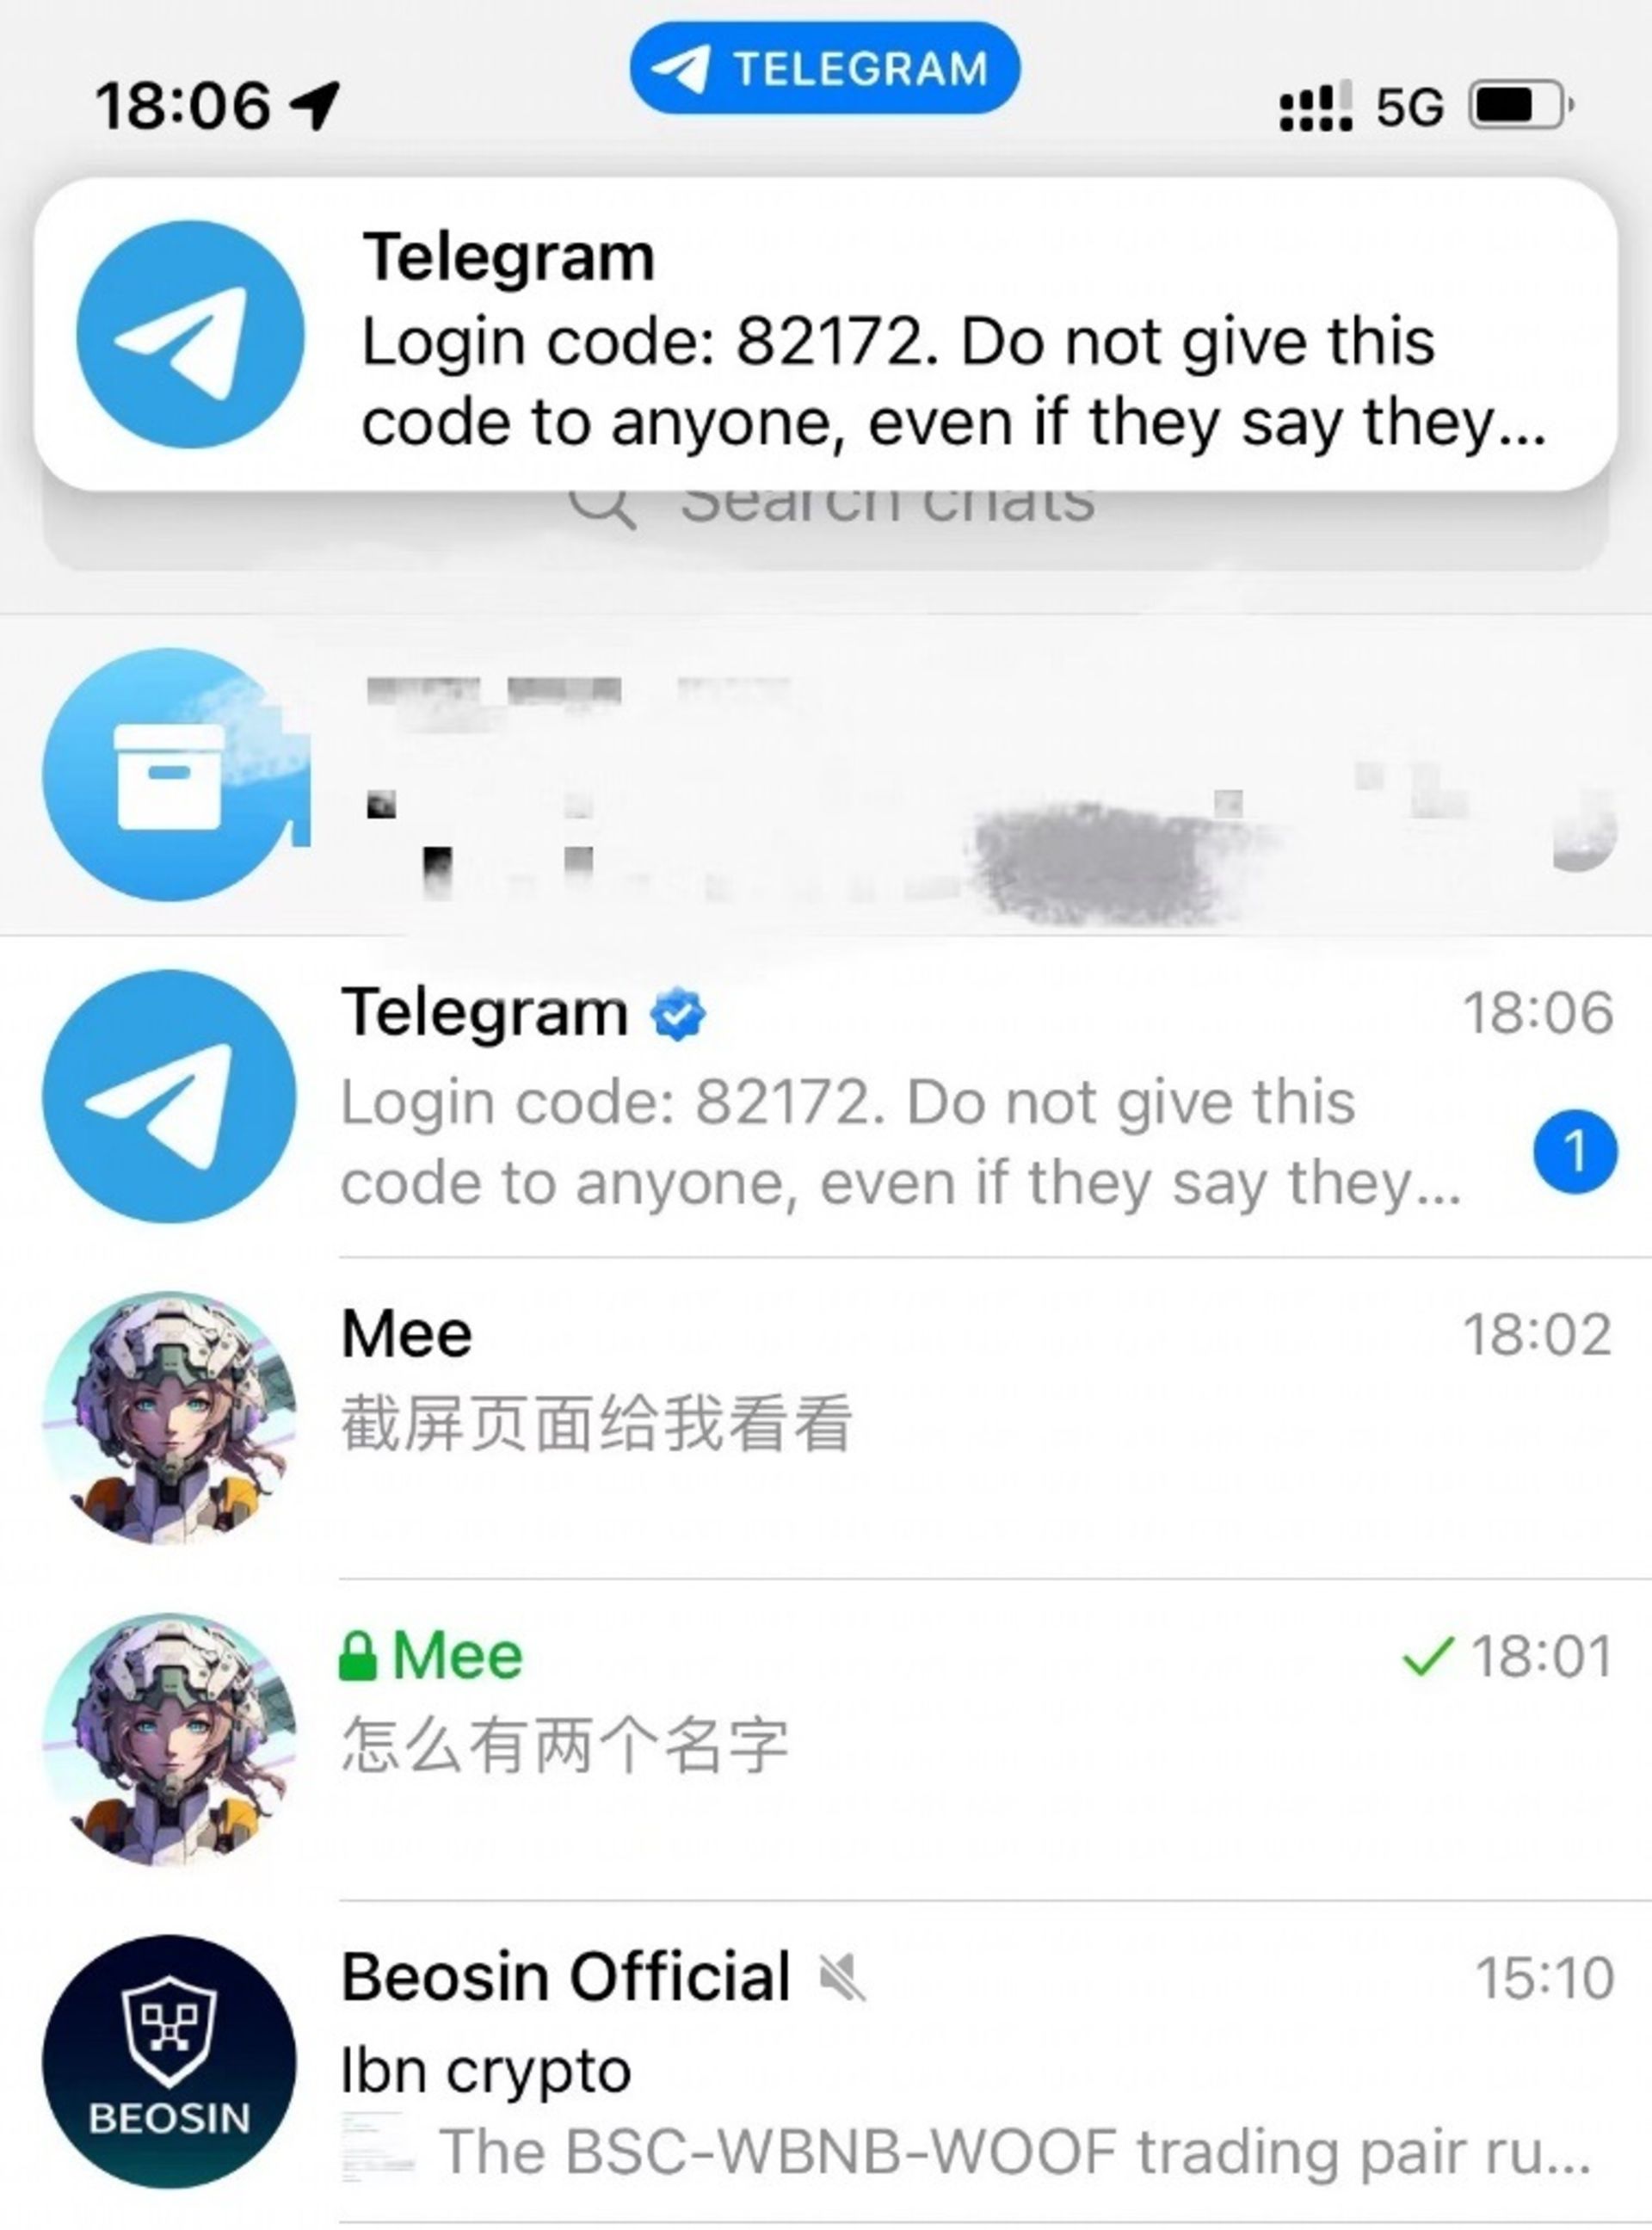 فهرست چت تلگرام